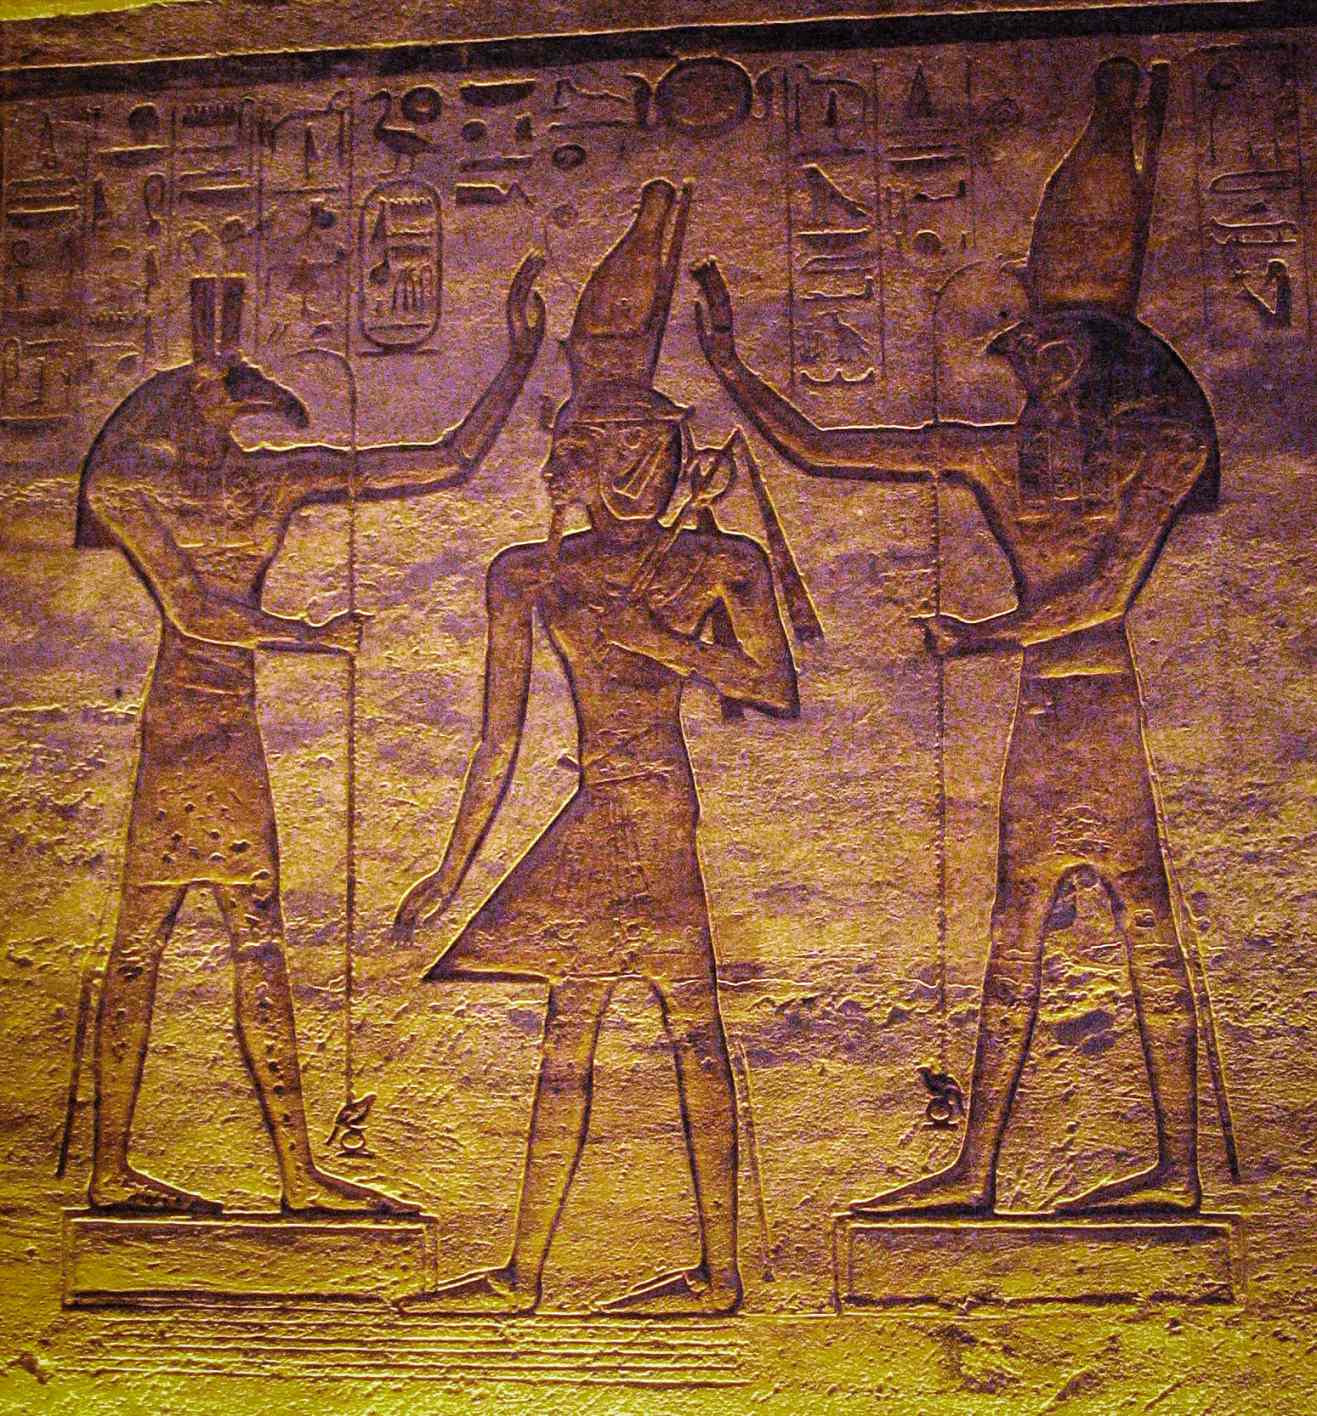 Set (Seth) na Horus na-asọpụrụ Ramesses. Ọmụmụ ihe dị ugbu a na-egosi na ọnwa nwere ike ịbụ Seth nọchitere anya ya na kpakpando agbanwe agbanwe Algol site na Horus na Cairo kalenda.